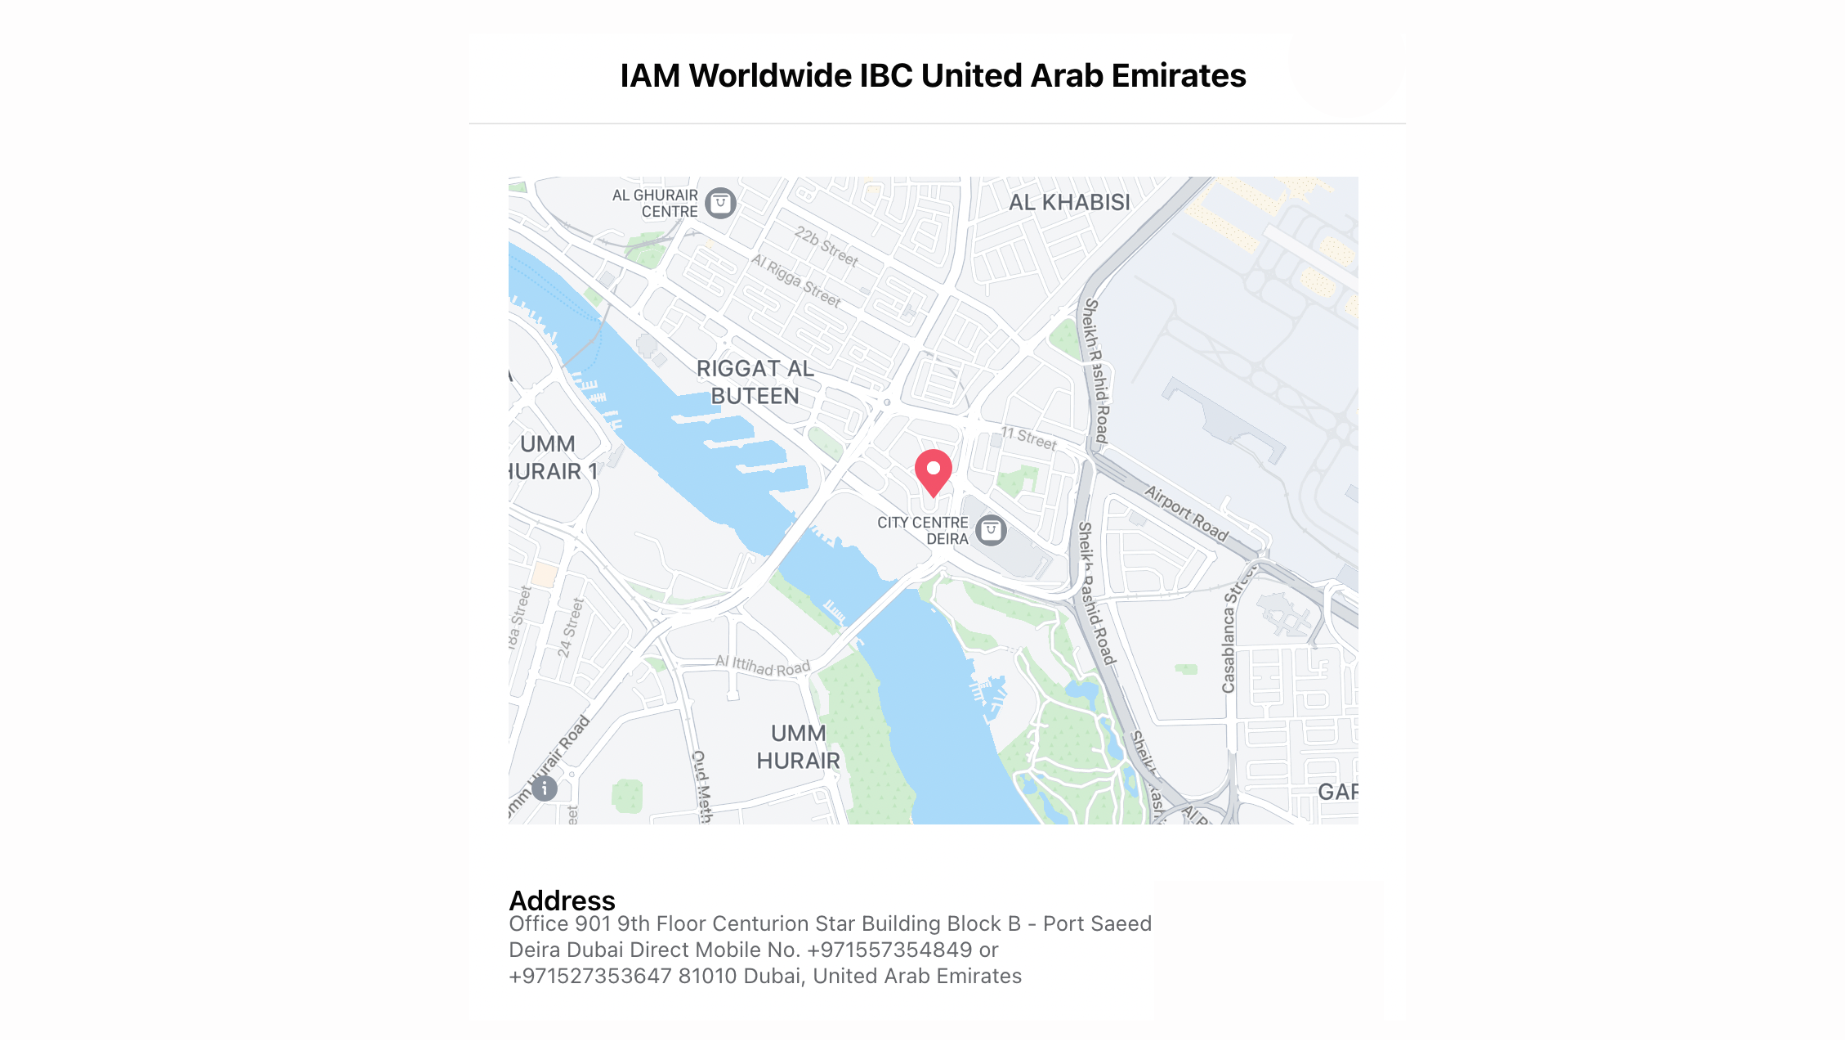 IBC UAE map address